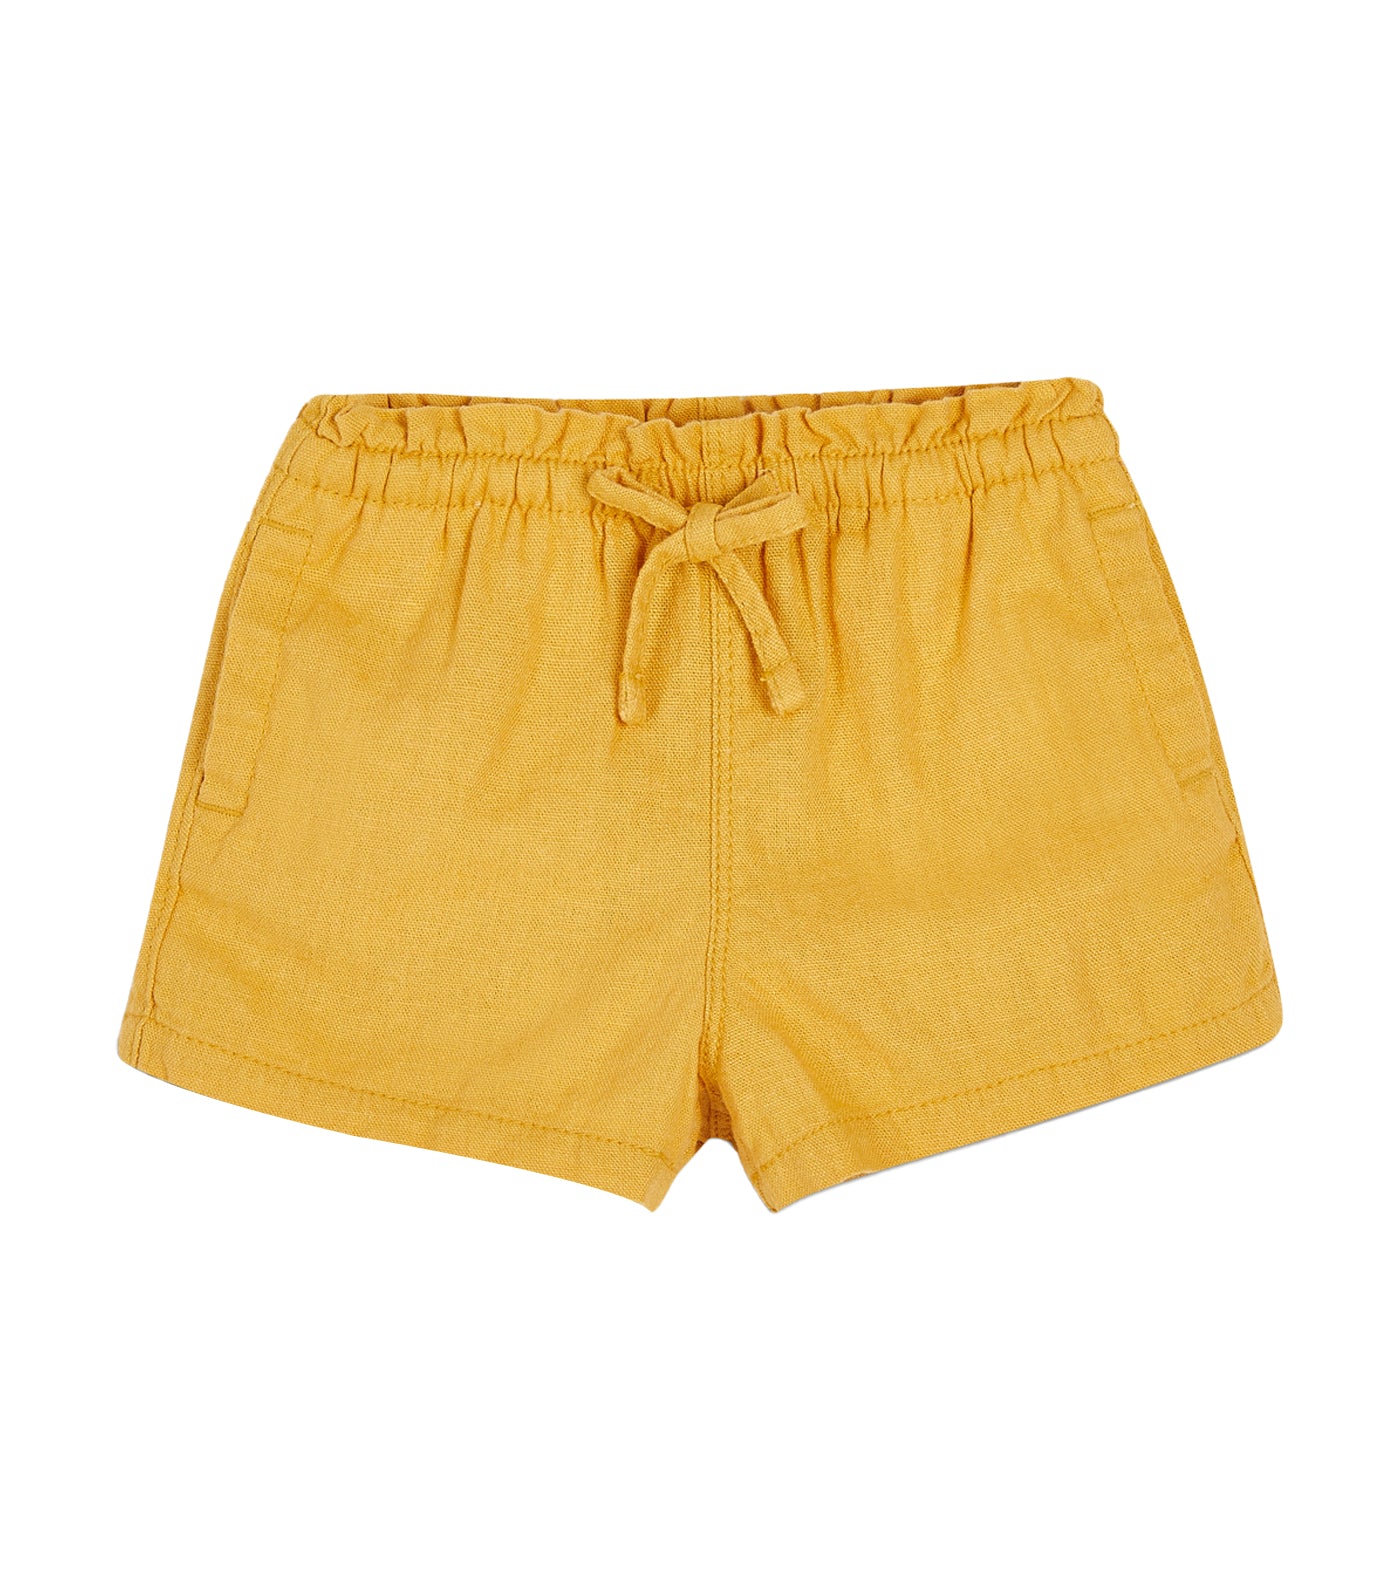 Functional Drawstring Linen-Blend Pull-On Shorts for Toddler Girls - Sweet Pollen